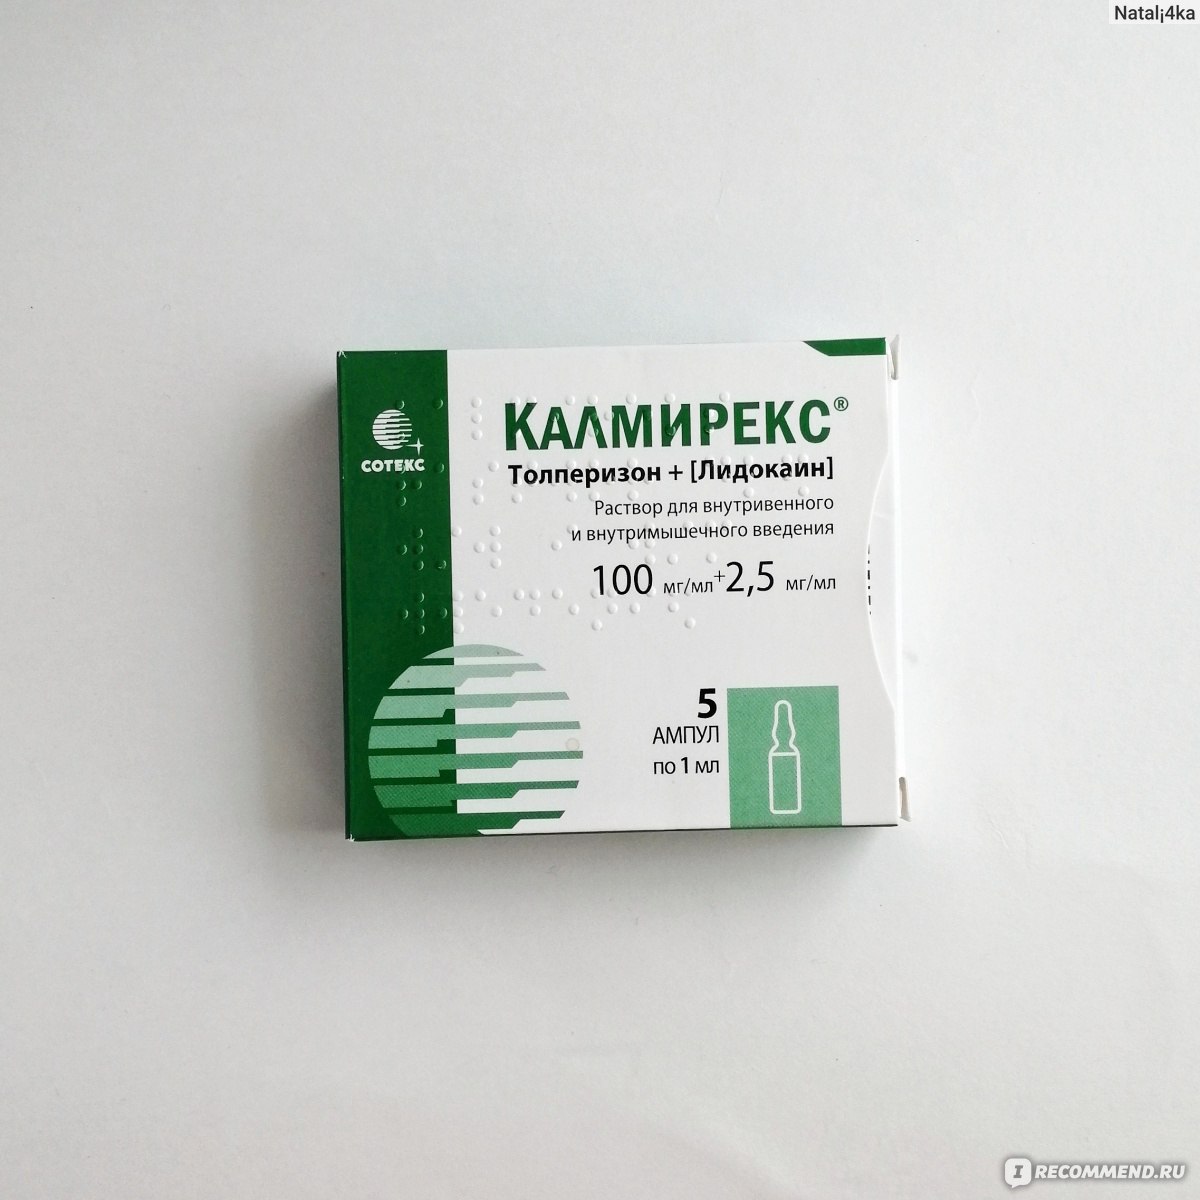 Калмирекс — эффективное средство для лечения мышечных спазмов